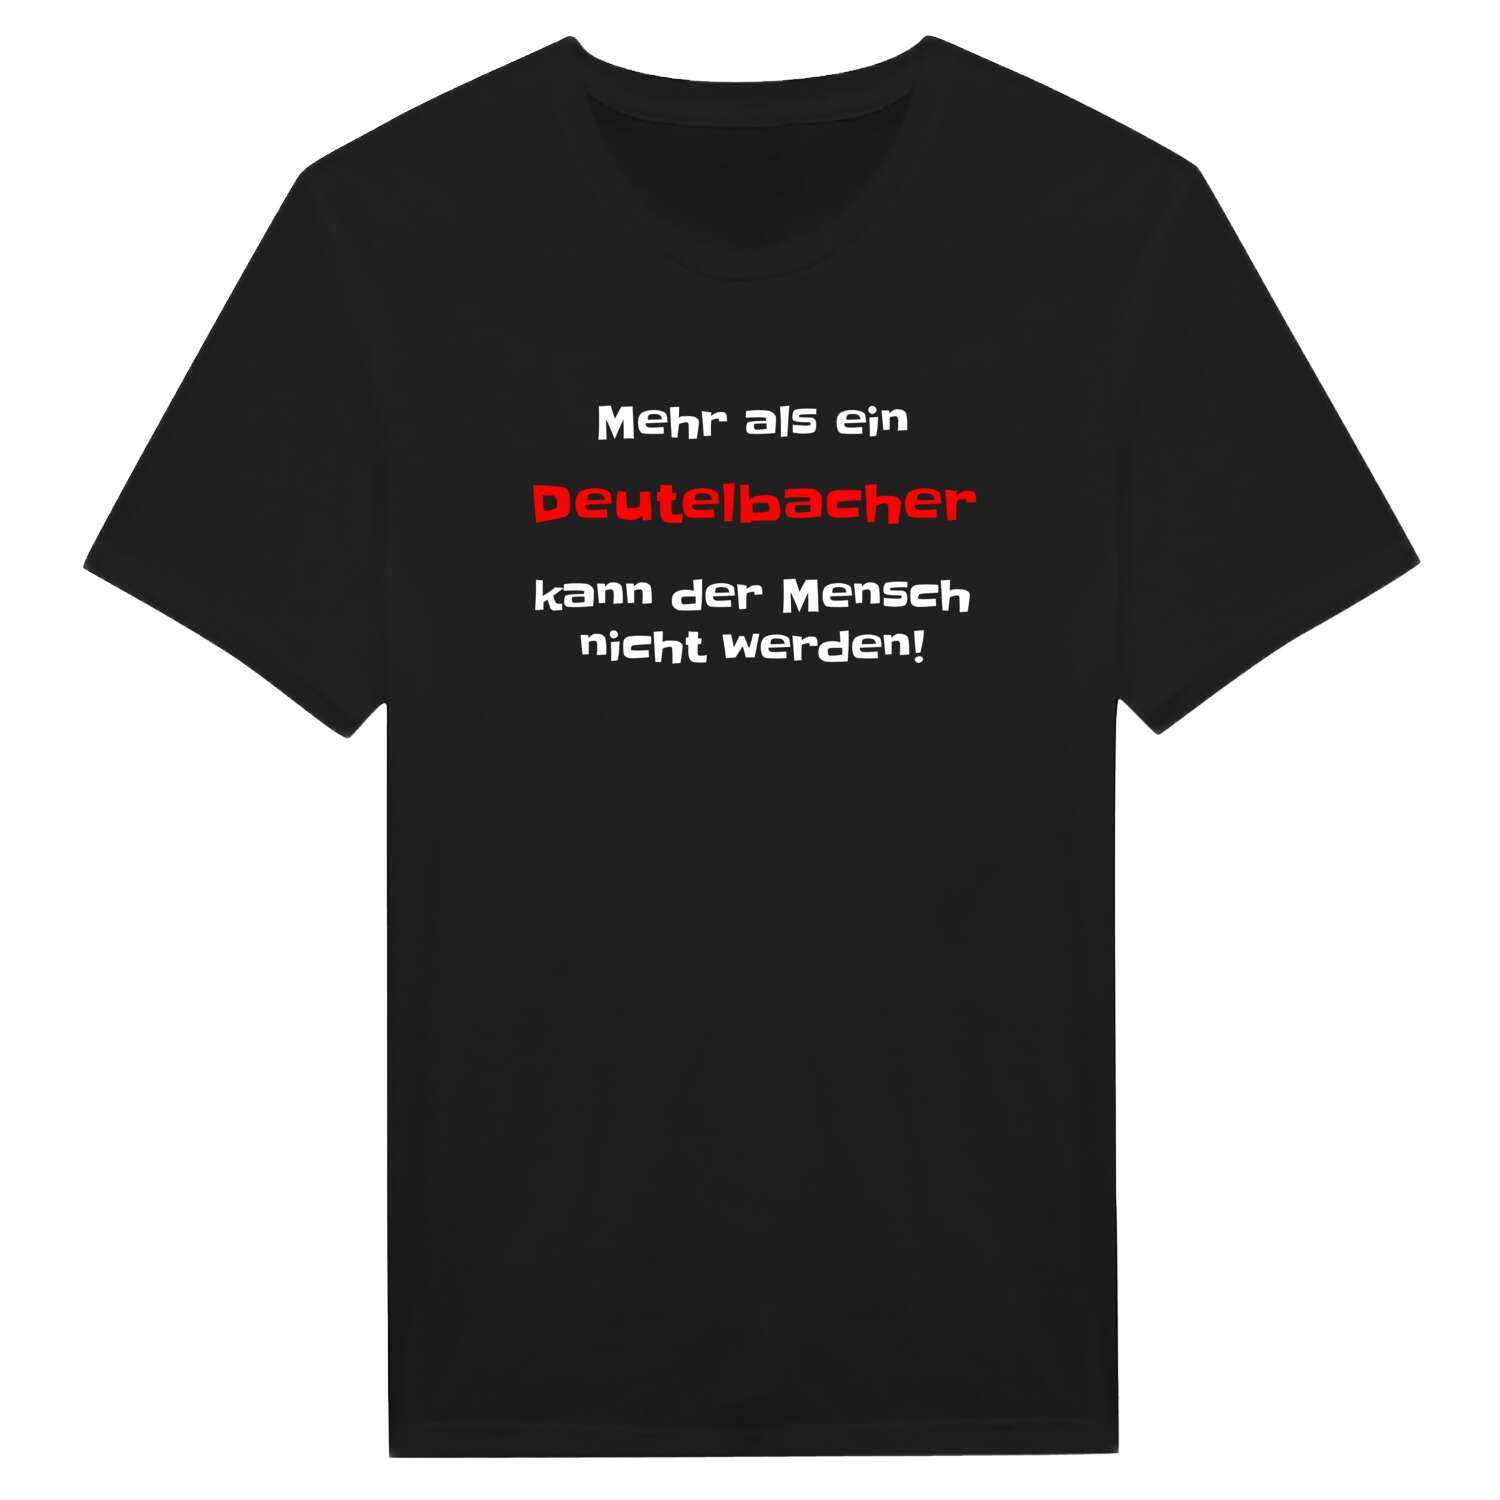 Deutelbach T-Shirt »Mehr als ein«